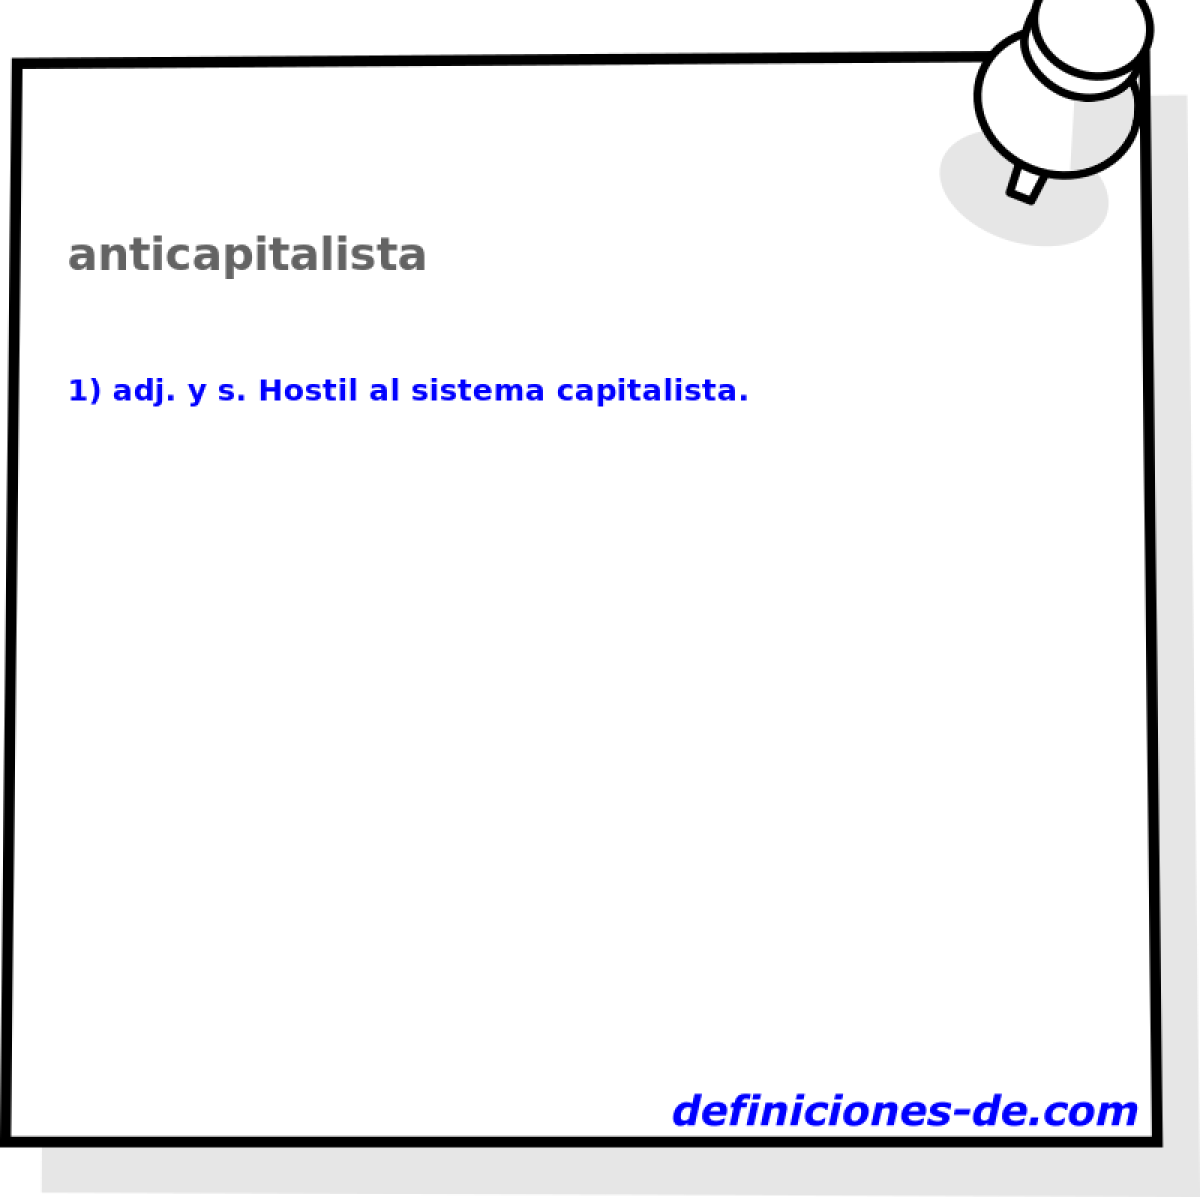 anticapitalista 